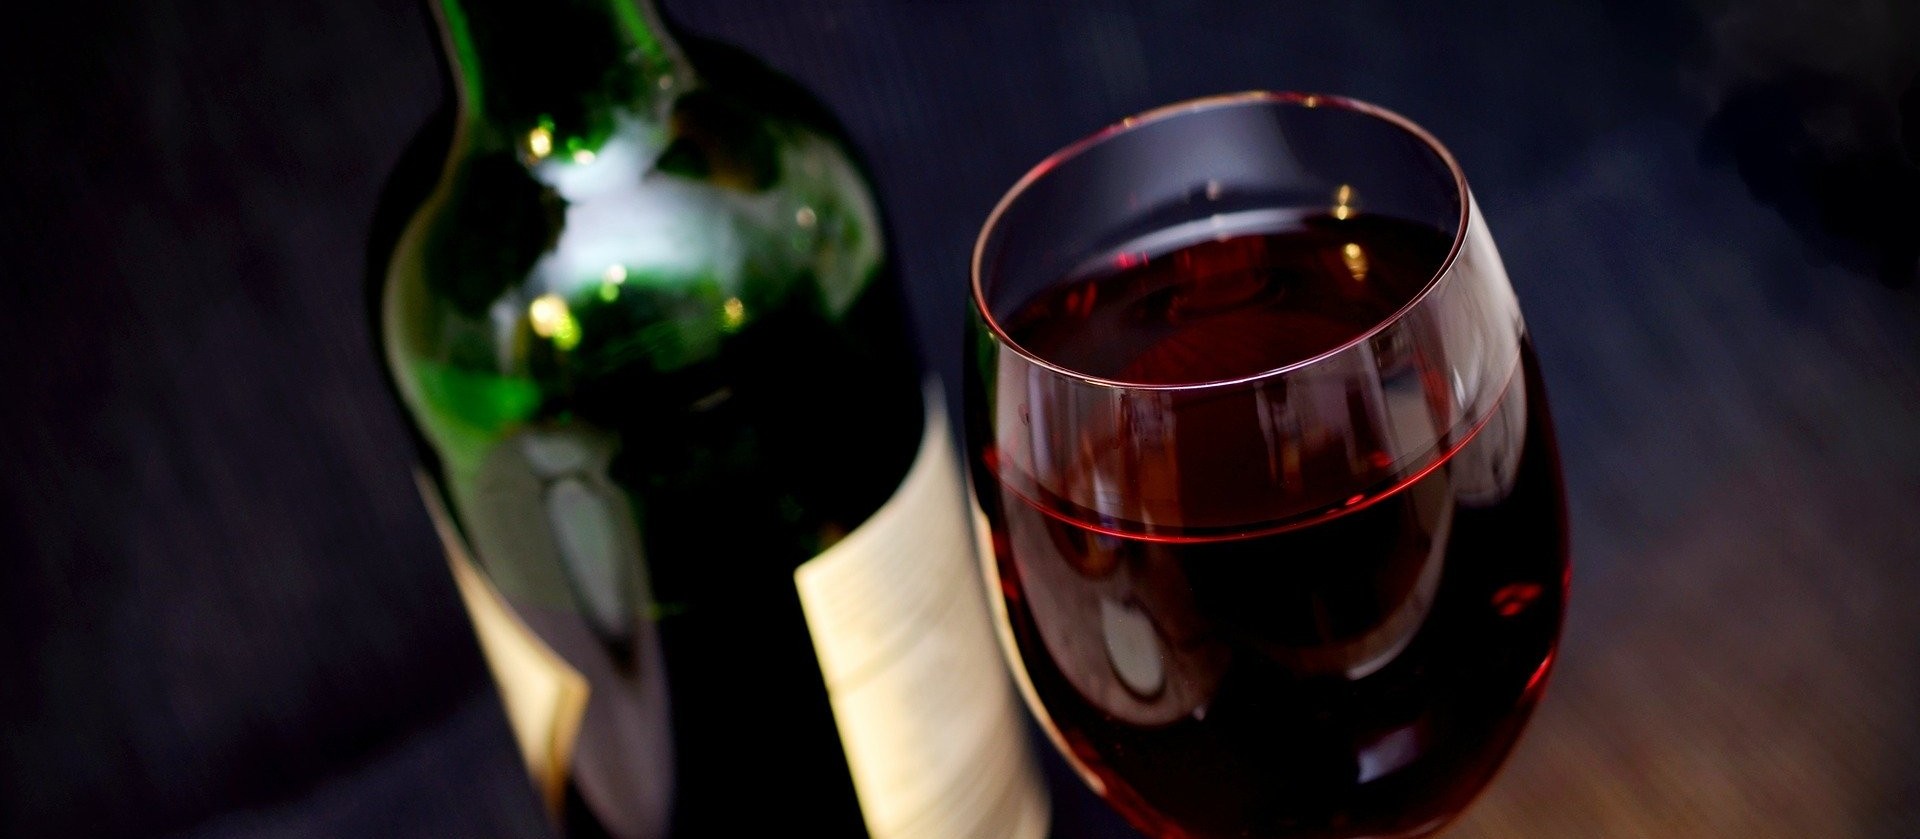 Como ler corretamente o rótulo de um vinho?